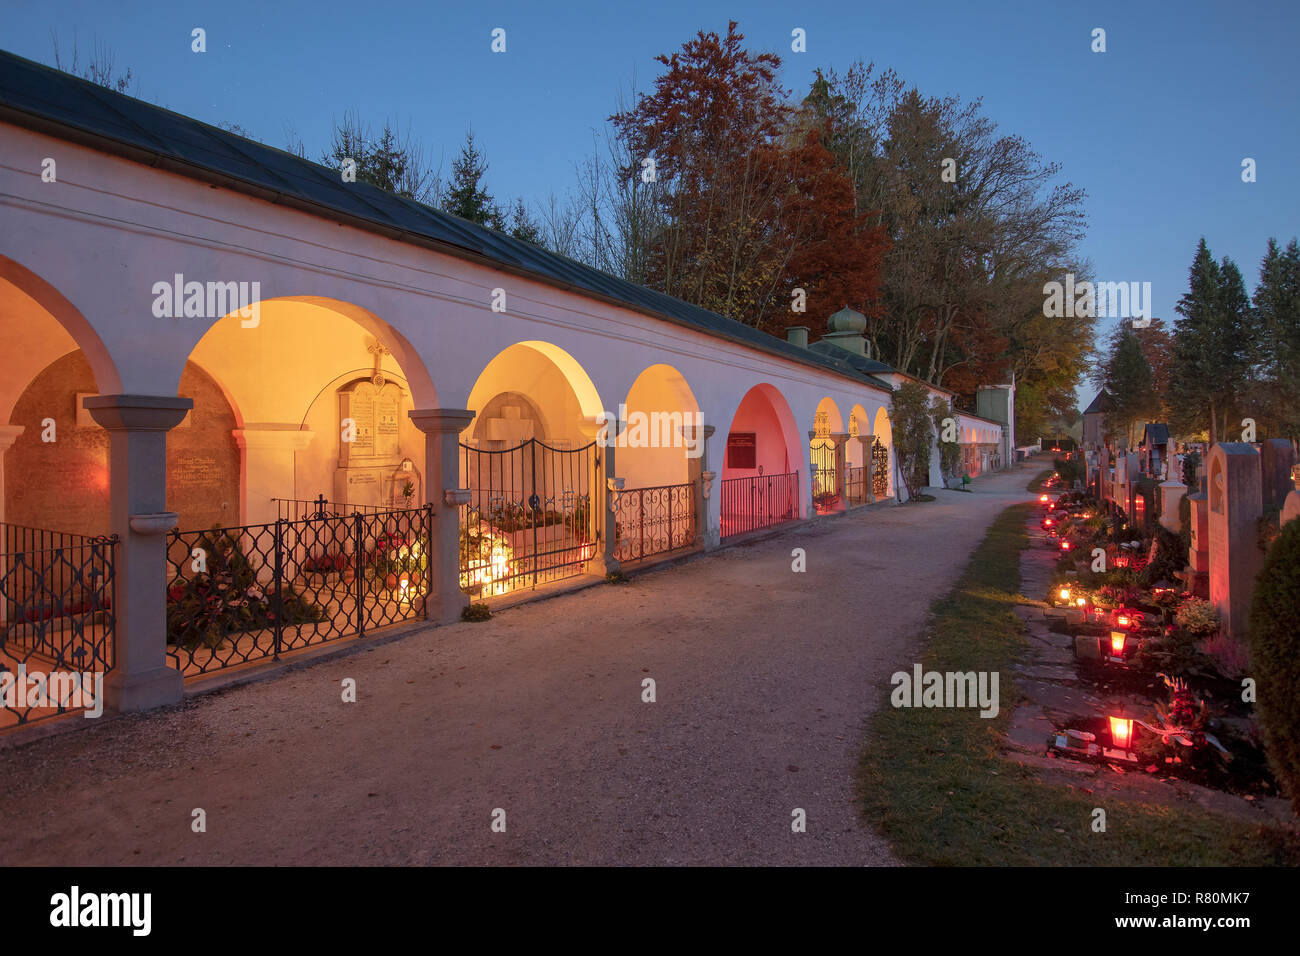 El cementerio de la aldea Teisendorf en el día de Todos los Santos con velas colocadas para honrar a sus familiares fallecidos. Alta Baviera, Alemania Foto de stock